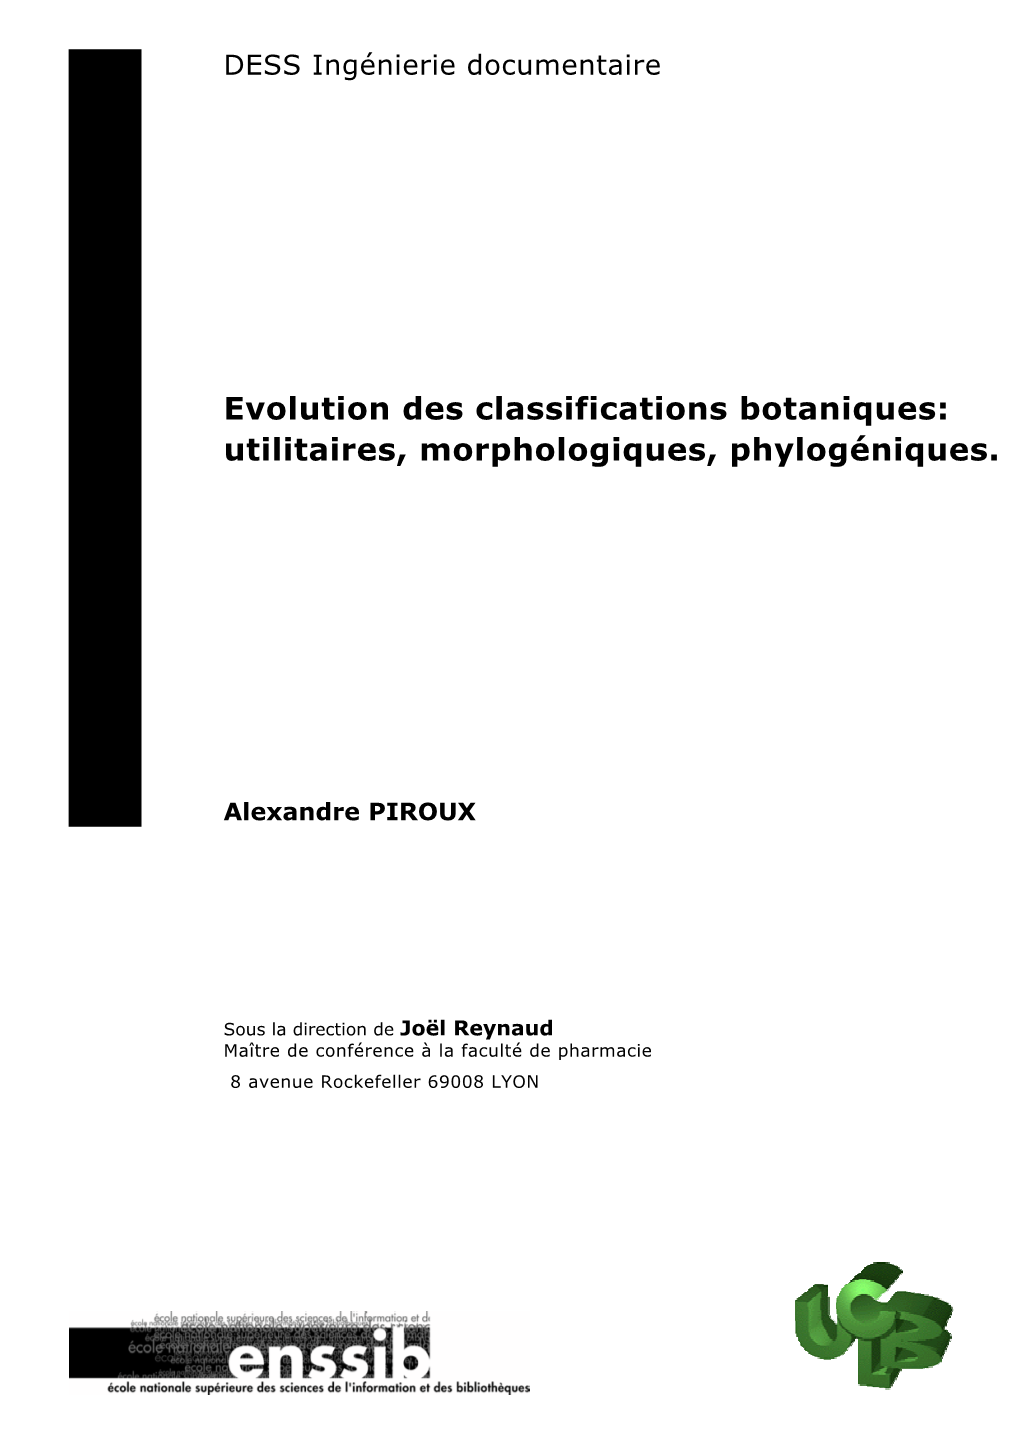 Evolution Des Classifications Botaniques: Utilitaires, Morphologiques, Phylogéniques